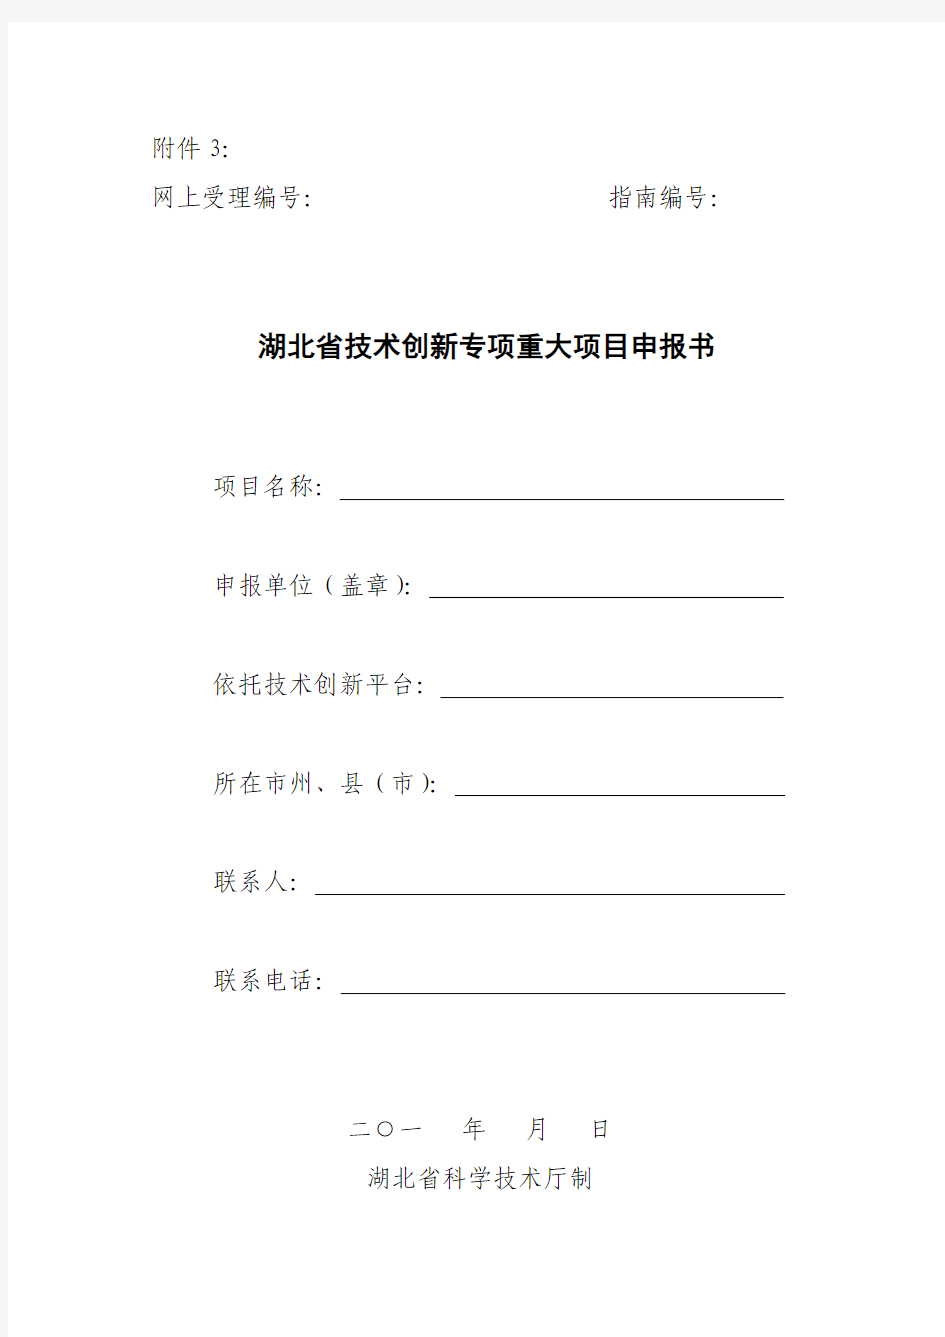 湖北省技术创新专项重大项目申报书(格式)